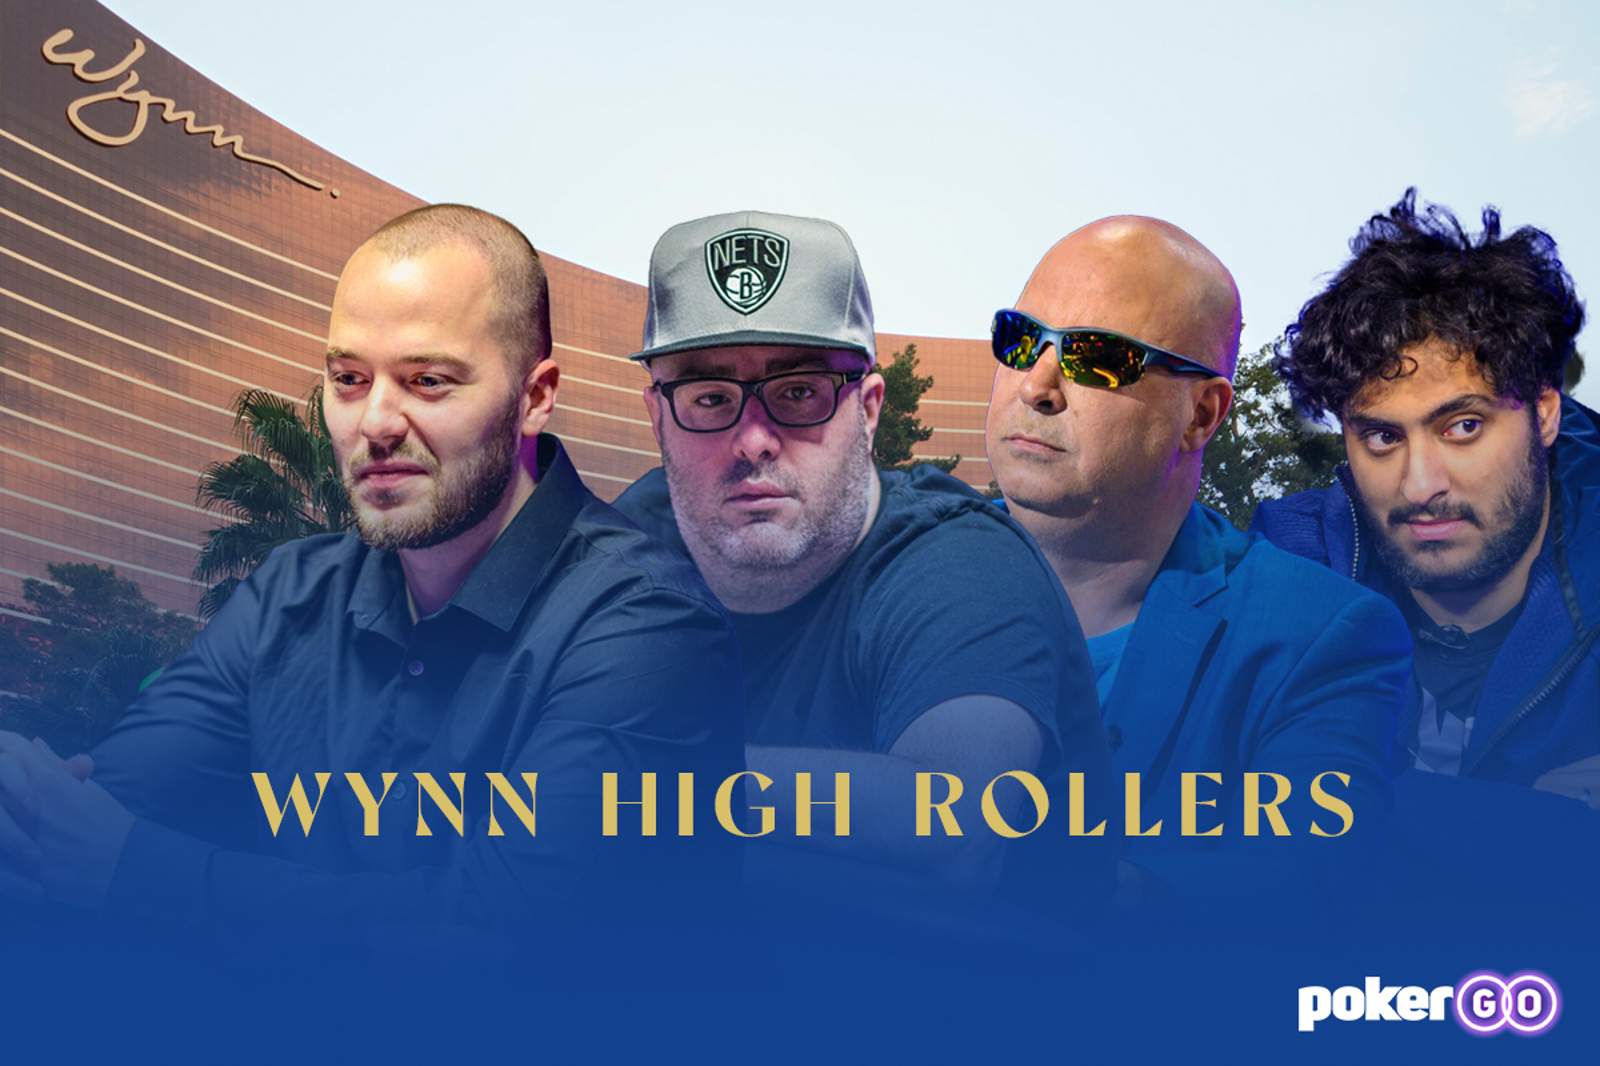 Wynn High Rollers Won by Martin Zamani, Sean Winter, Ray Qartomy, and Jared Jaffee